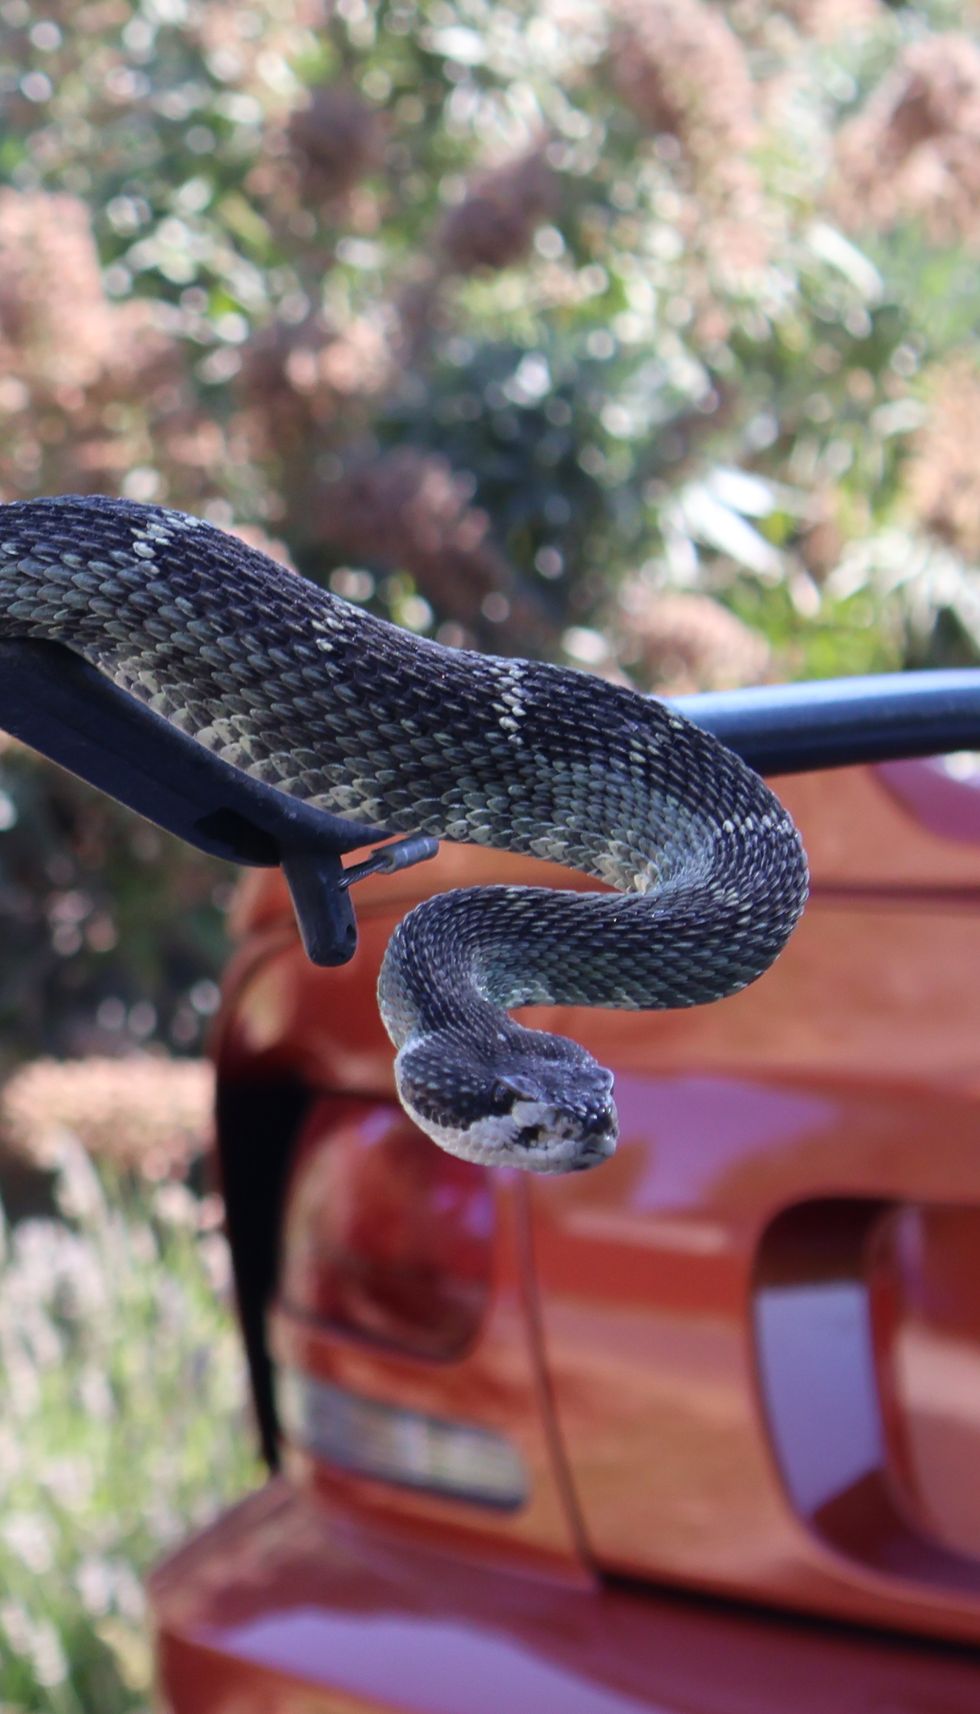 len ramirez snake wrangler dodge viper copperhead